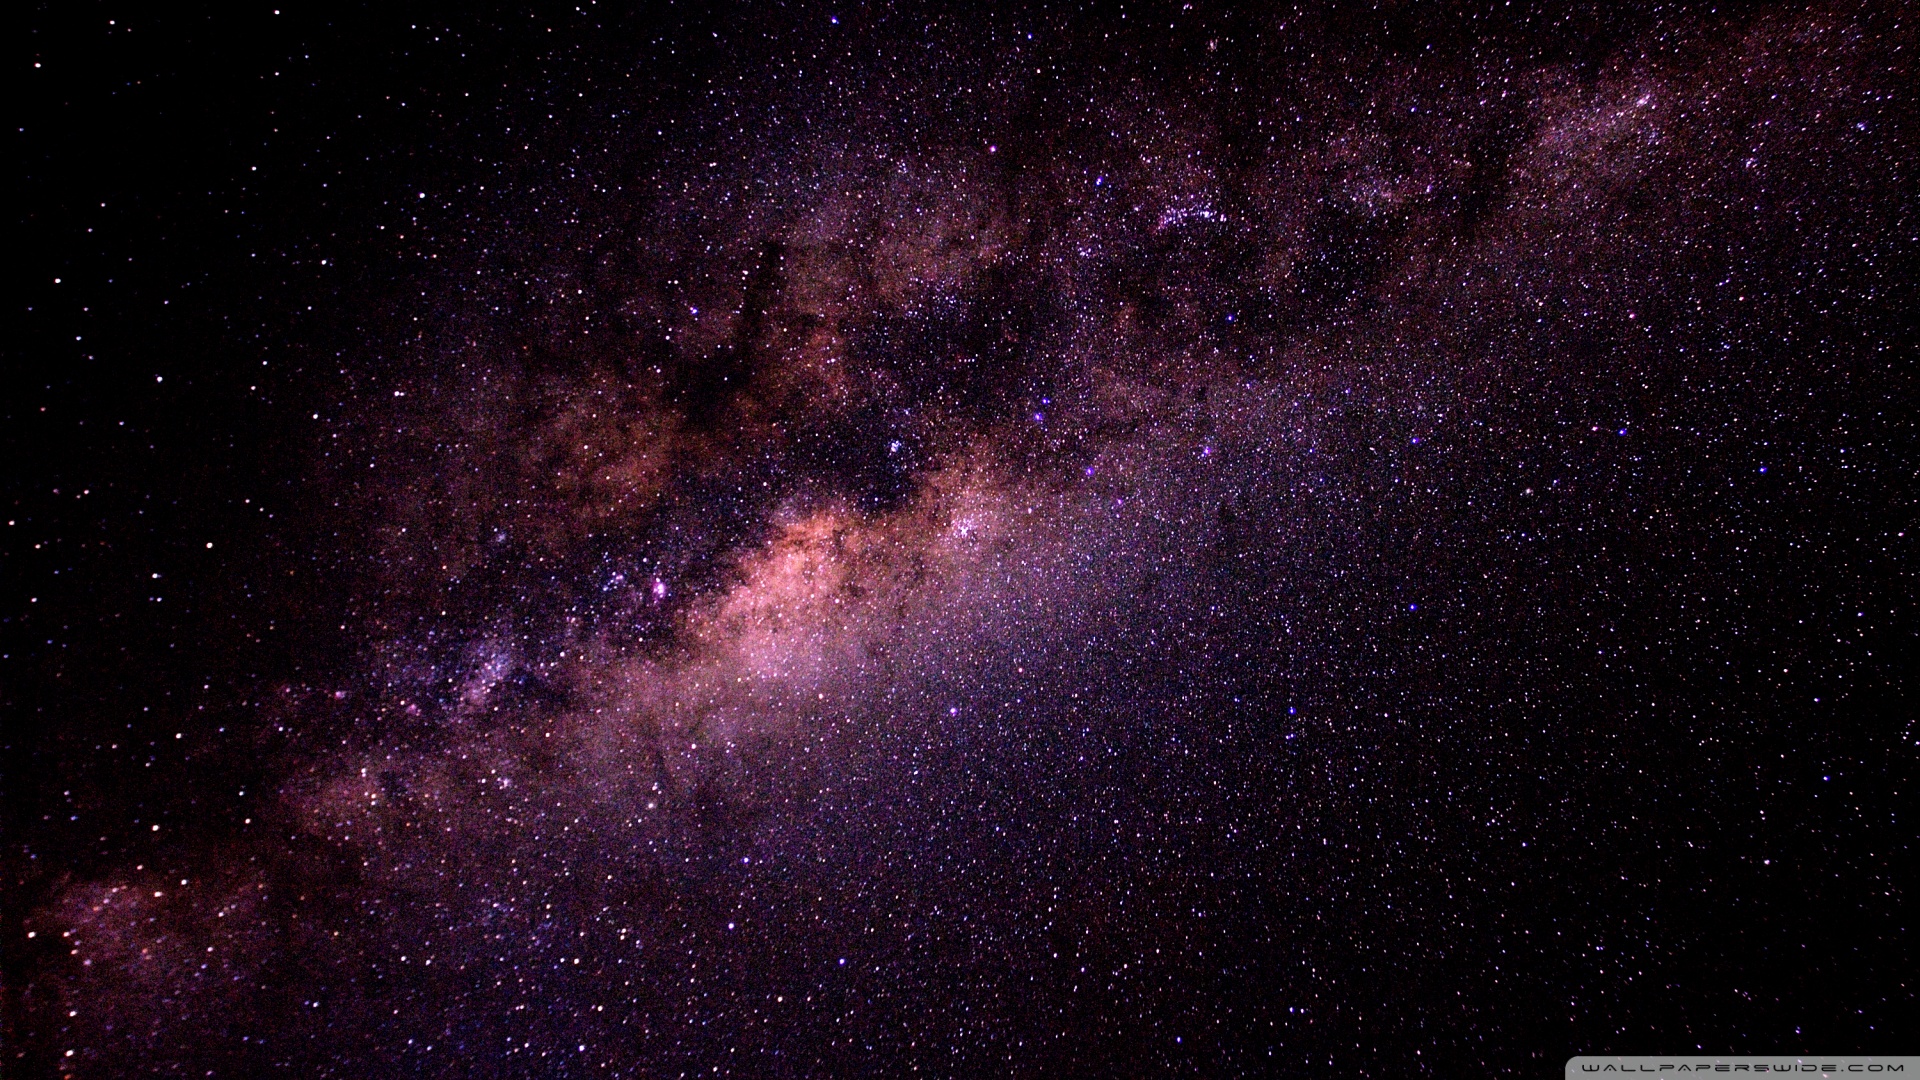 Milky Way Galaxy HD desktop wallpaper : Widescreen : High ...